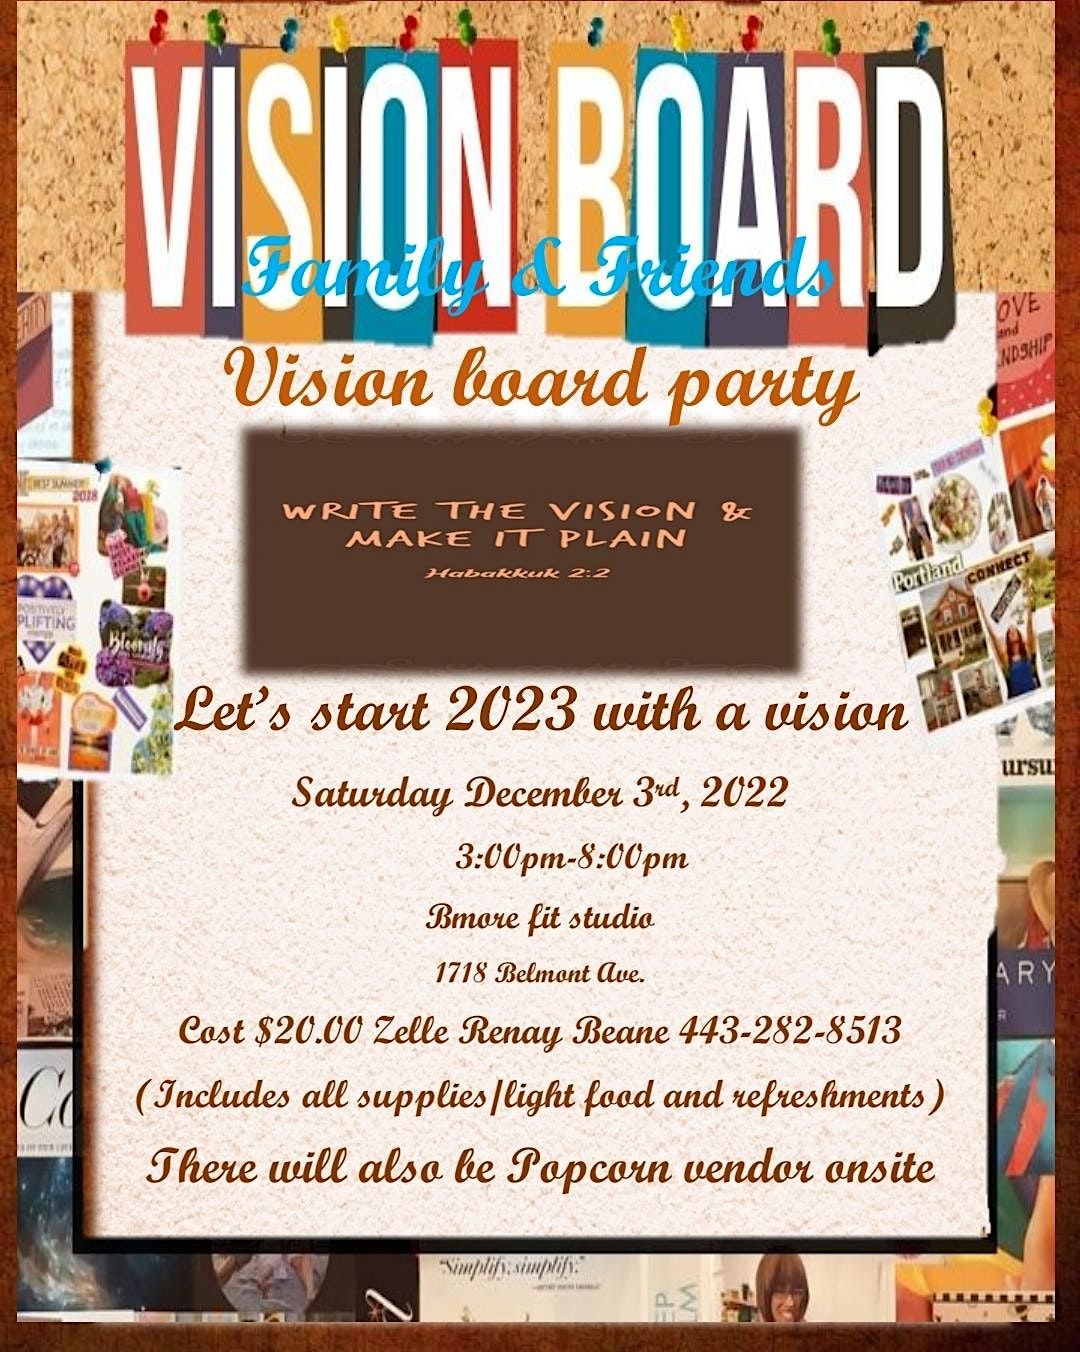 Family and Friends Vision Board Party | Bmore fit studio/Tabula Rasa ...